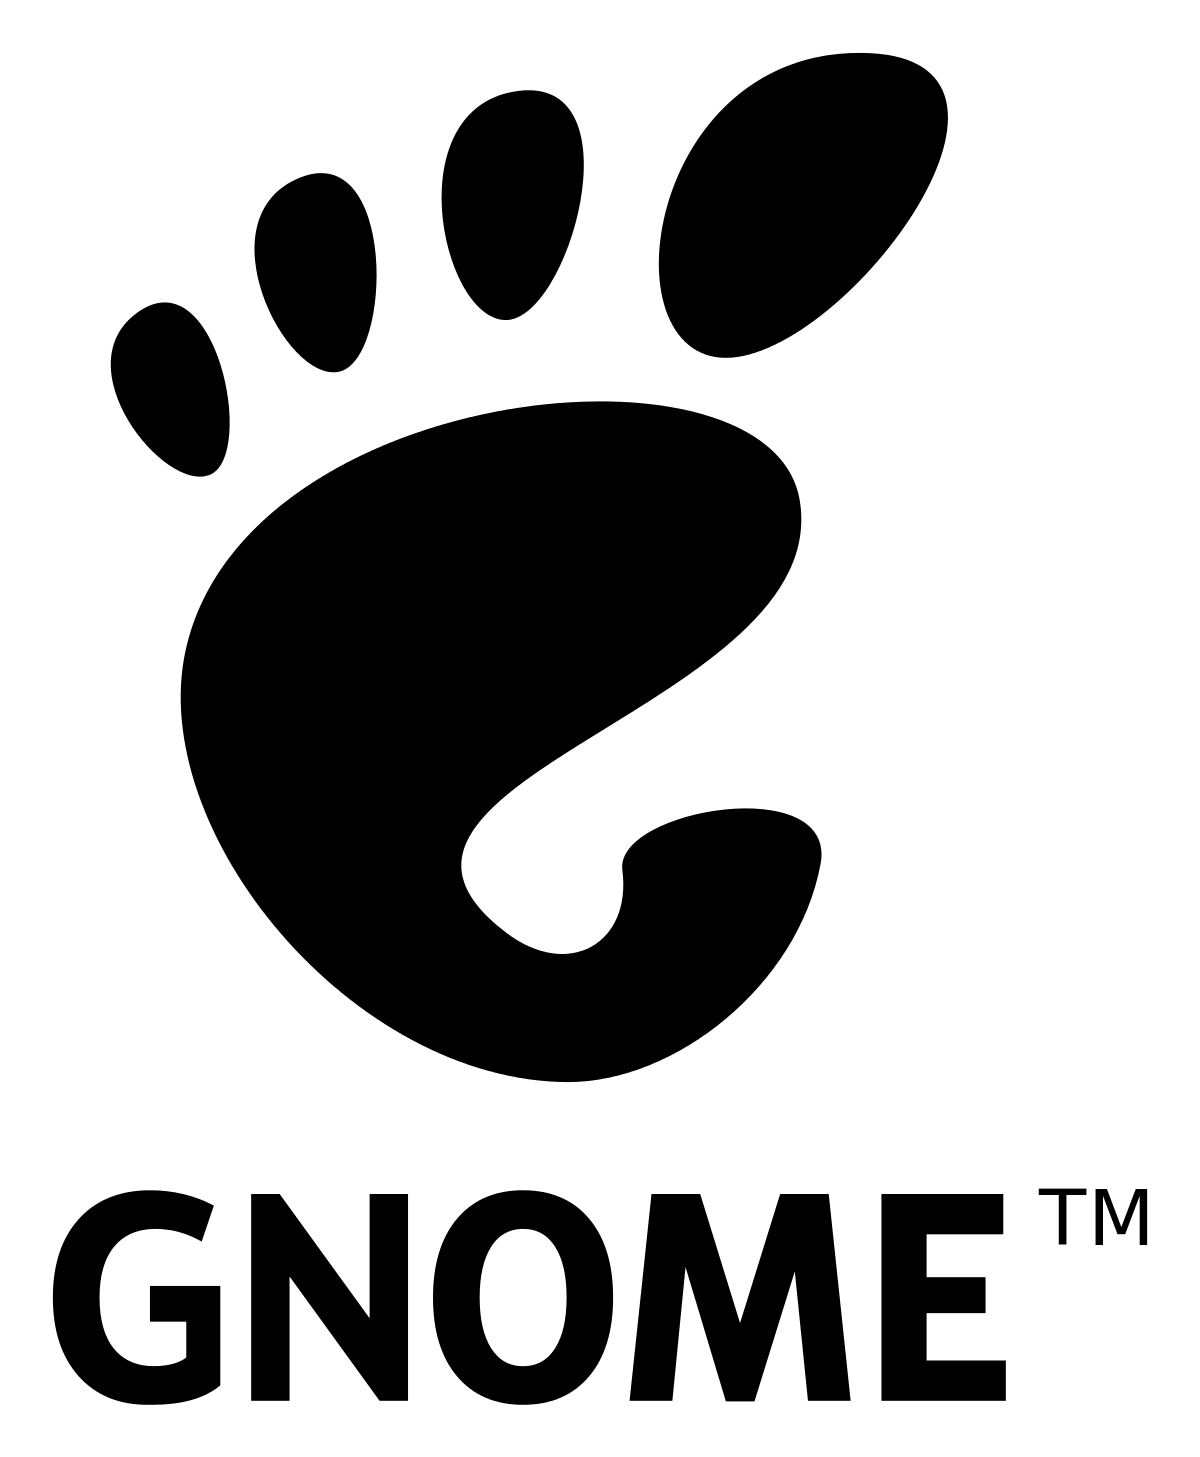 Latest Linux Logo - GNOME Project unveils latest version of Linux and Unix desktop